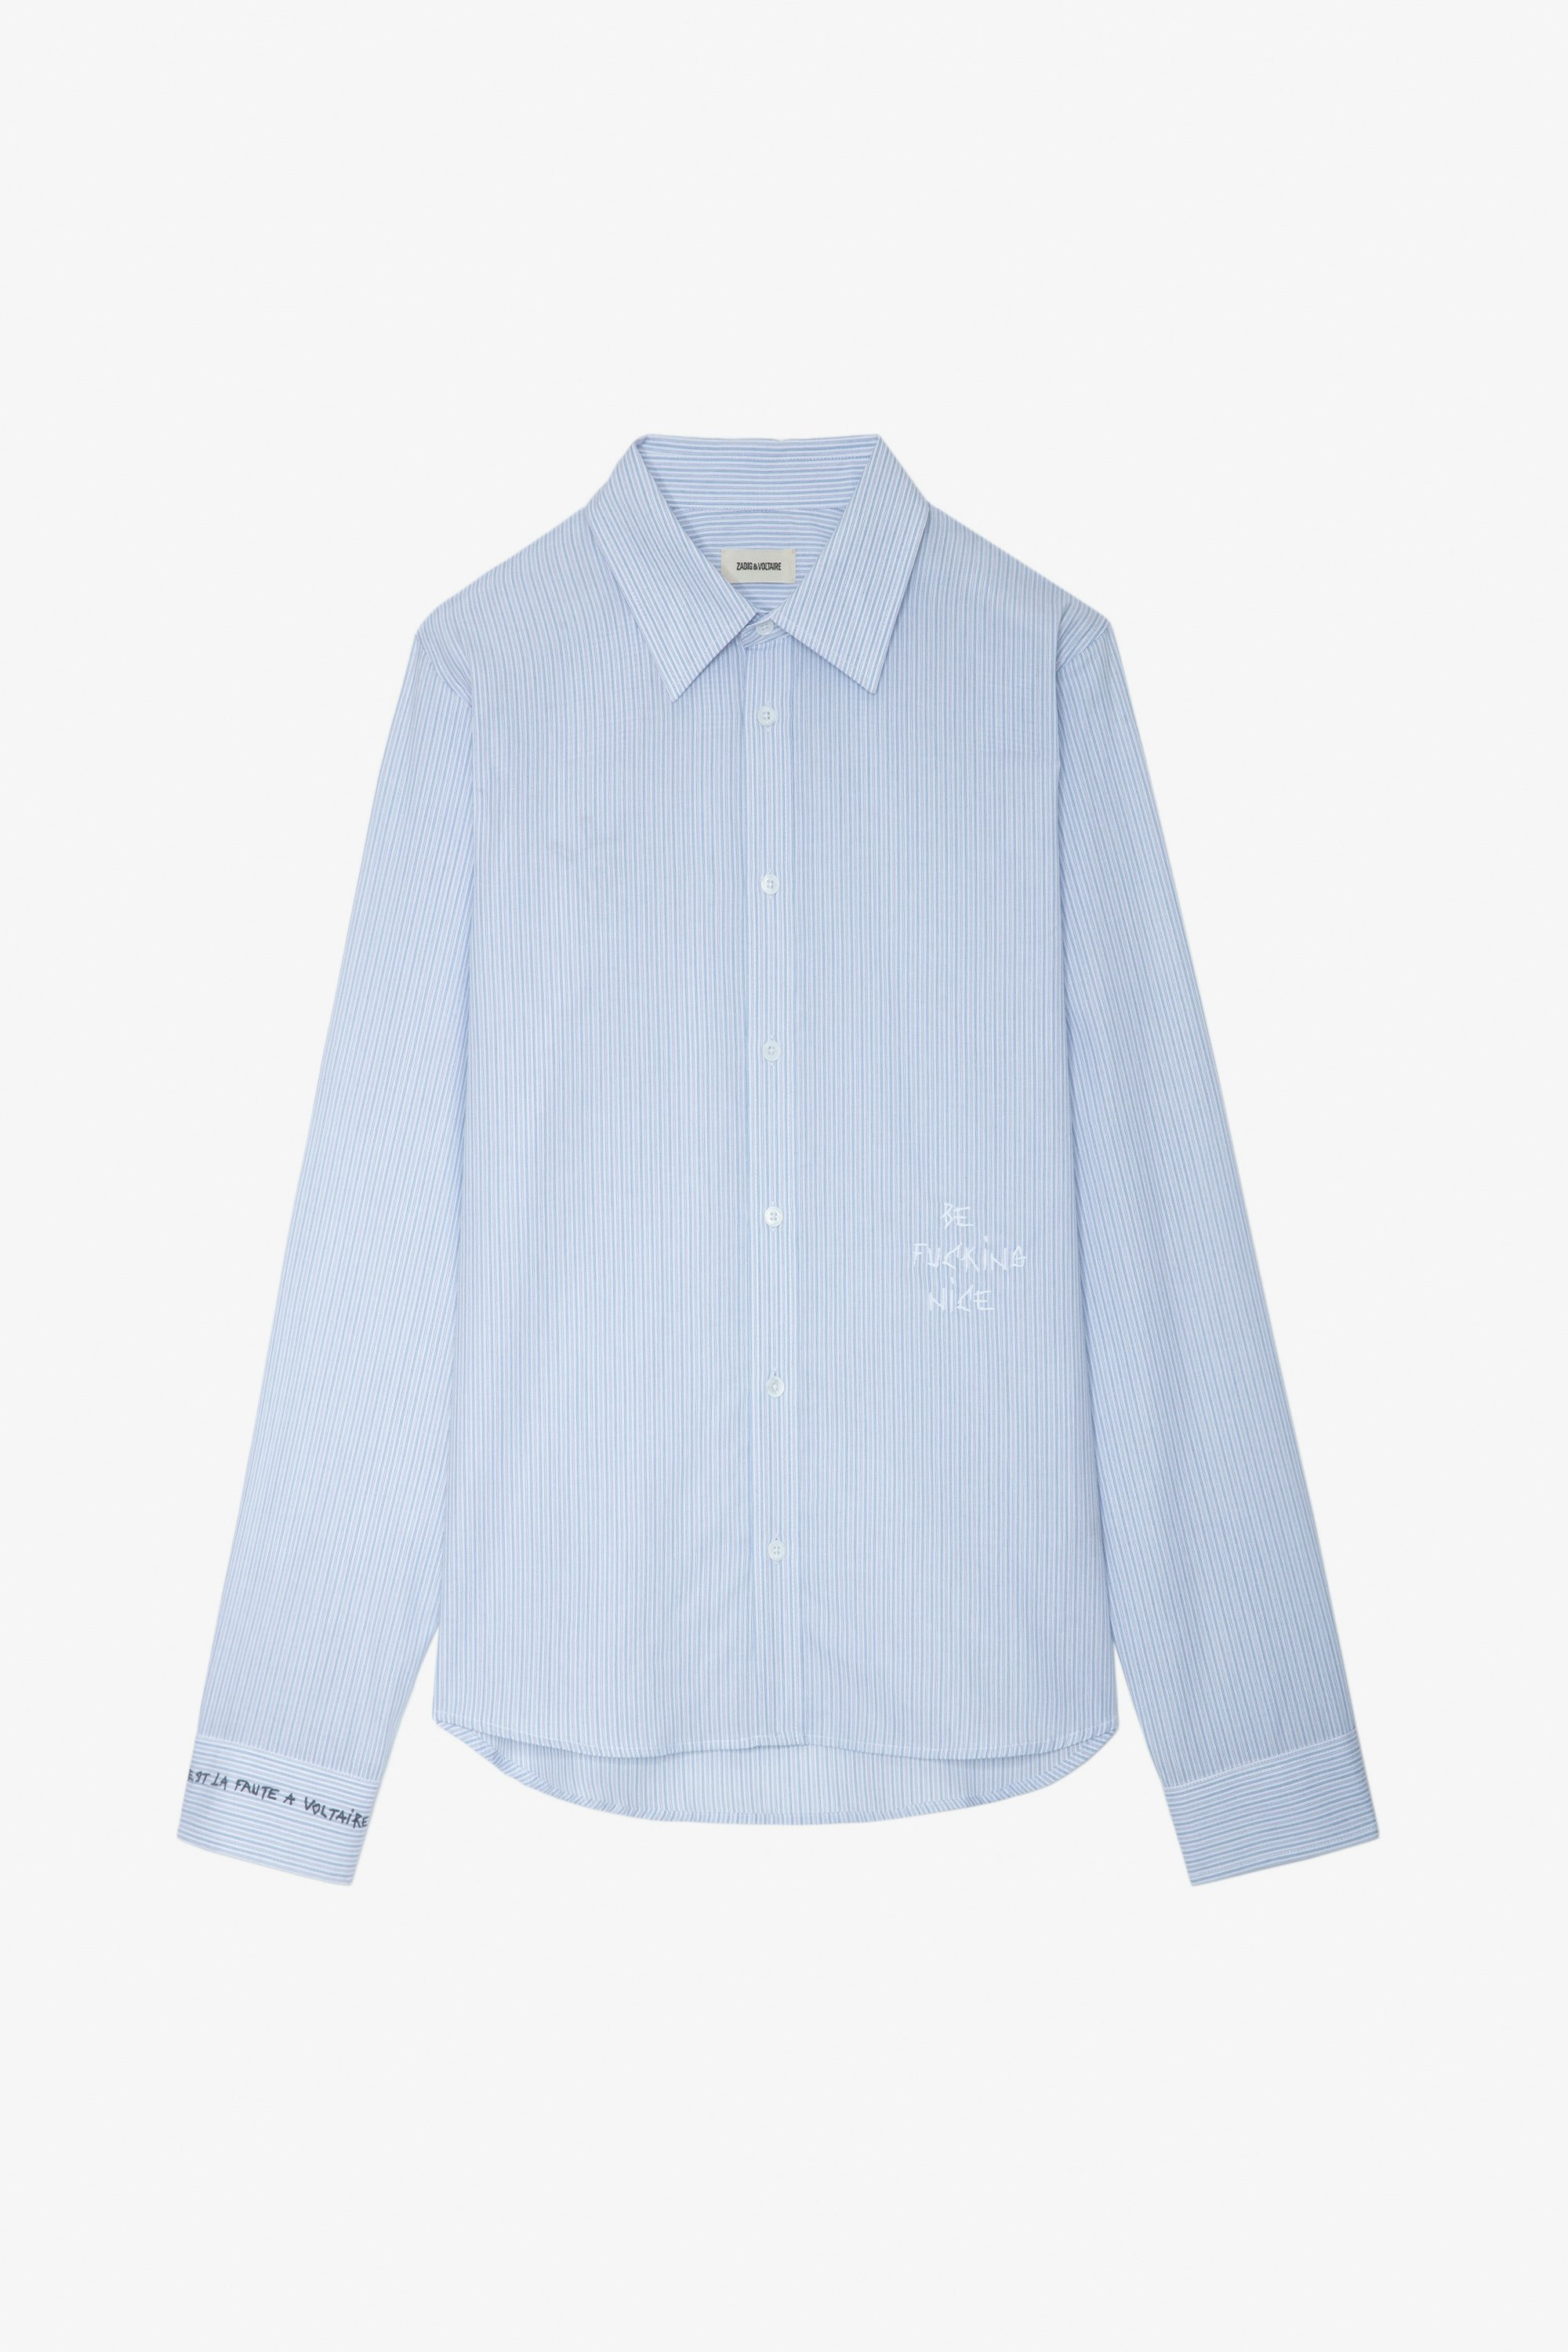 Camisa Stan - Camisa azul cielo a rayas de algodón con bordado para hombre.